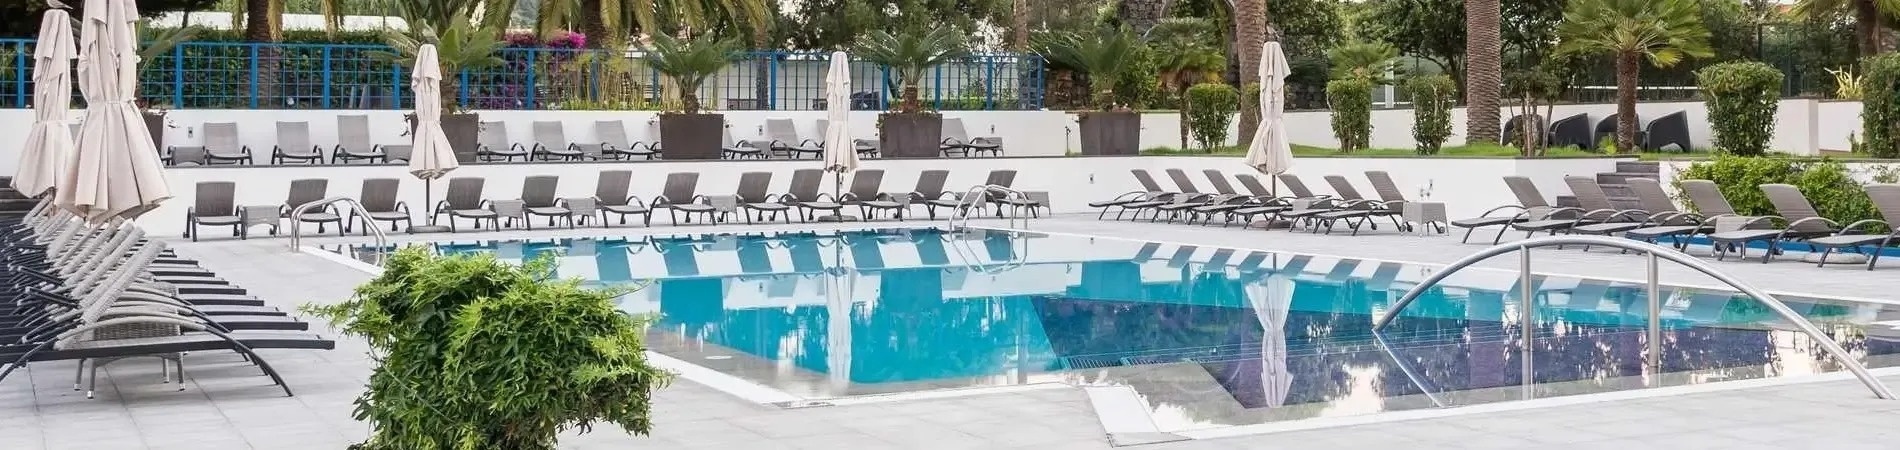 piscinas do hotel